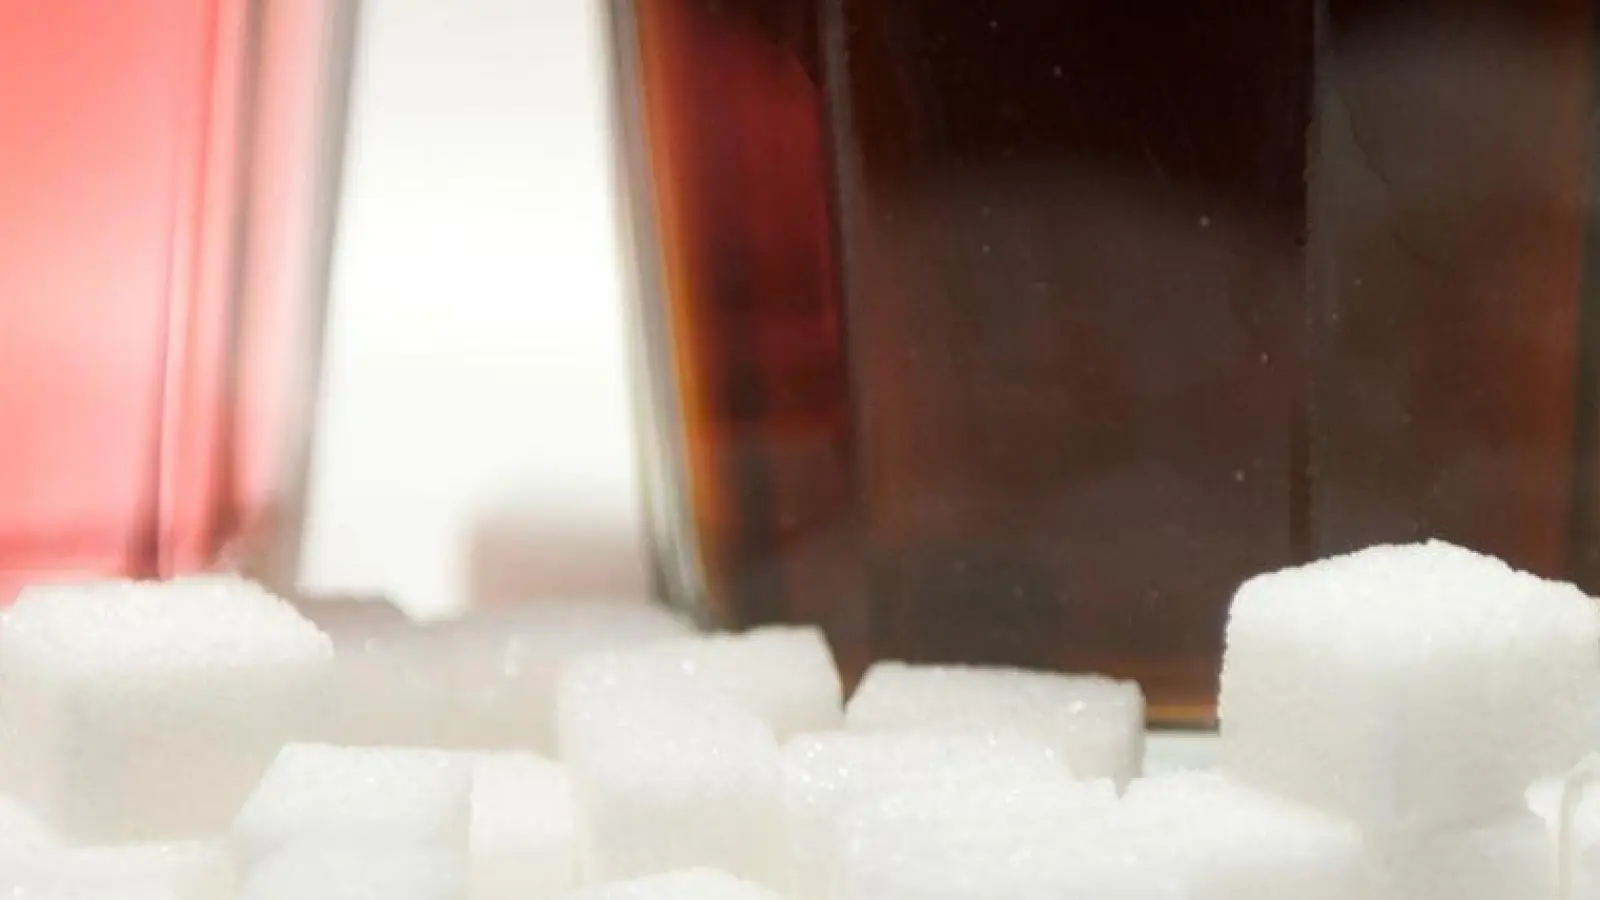 Bei gesüßten Erfrischungsgetränken hat sich laut einer Untersuchung ein zunächst deutlicher Rückgang der Zuckergehalte zuletzt nicht fortgesetzt. (Foto: Monika Skolimowska/dpa)